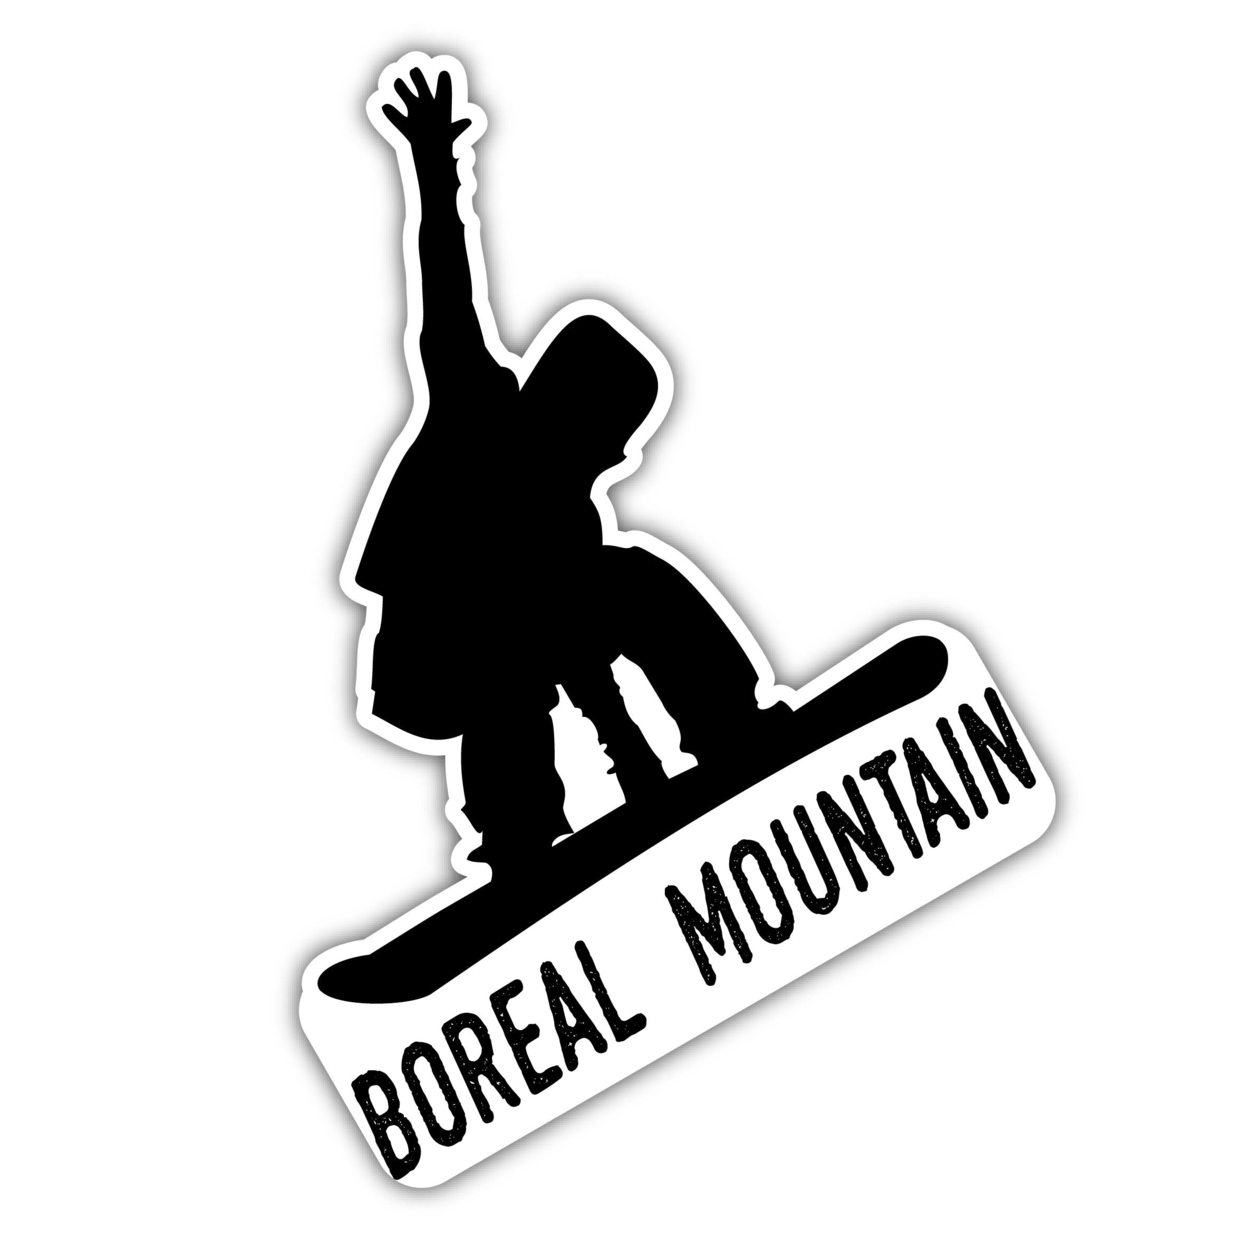 Boreal Mountain California Ski Adventures Souvenir 4 Inch Vinyl Decal Sticker Mountain Design